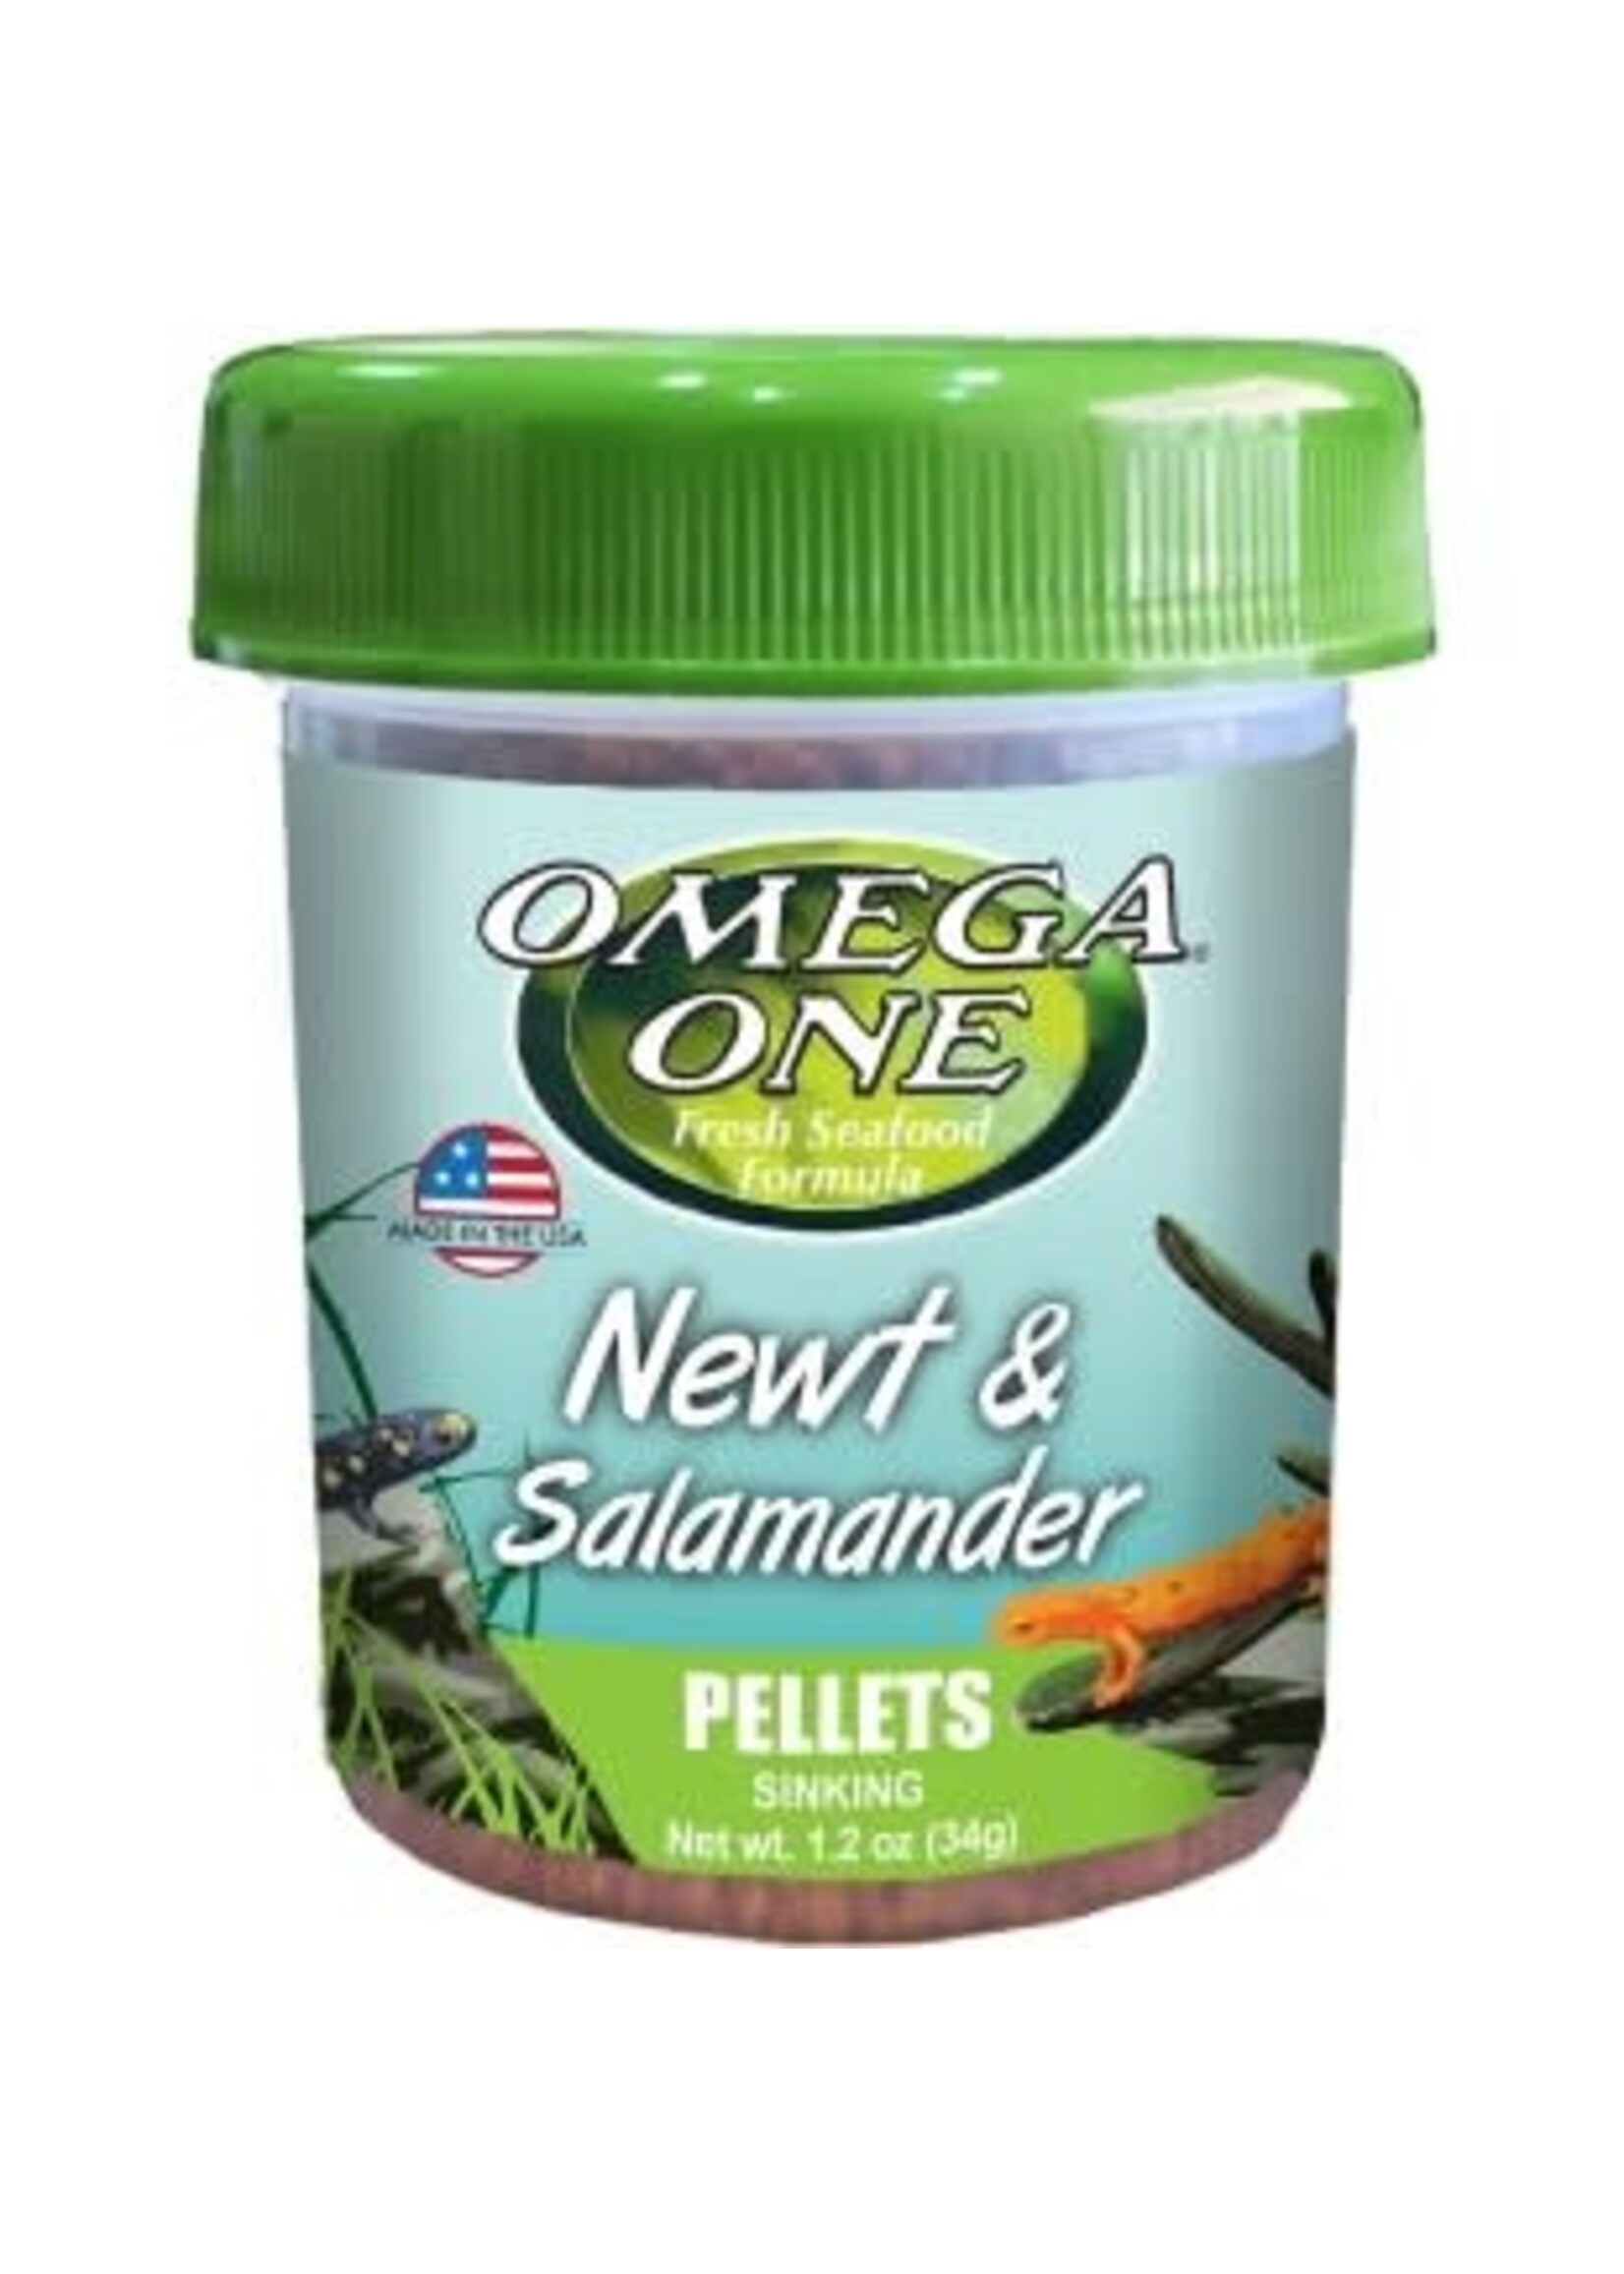 Omega One Omega One Newt & Salamander Pellets 1.2oz